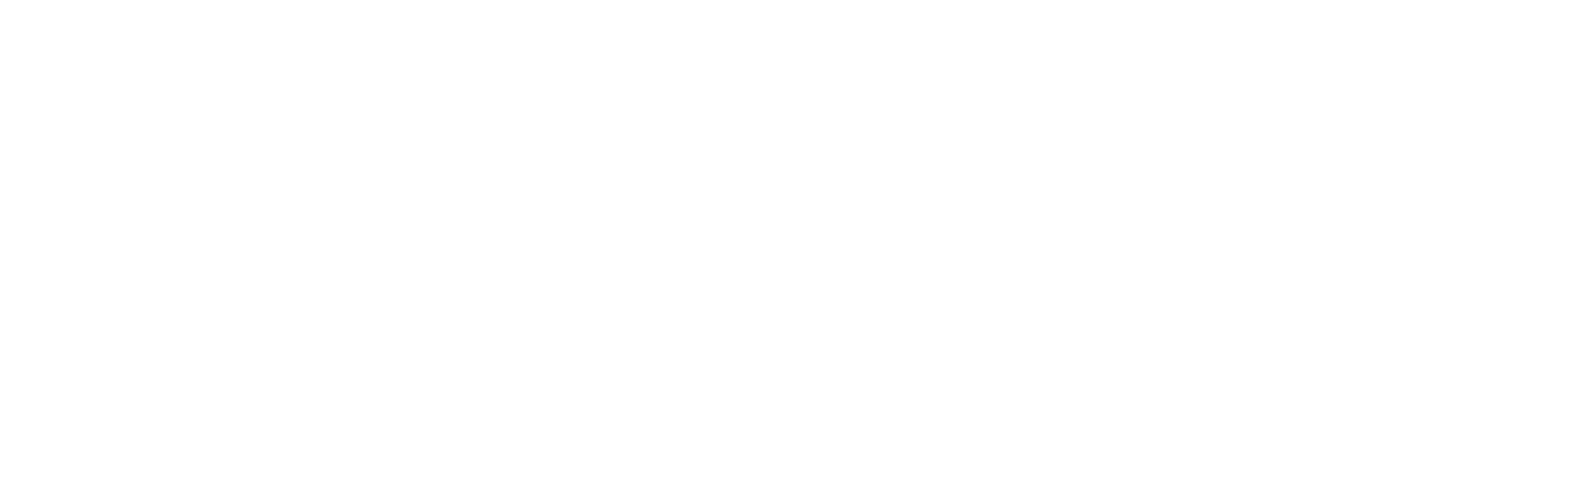 Officiels des Transporteurs